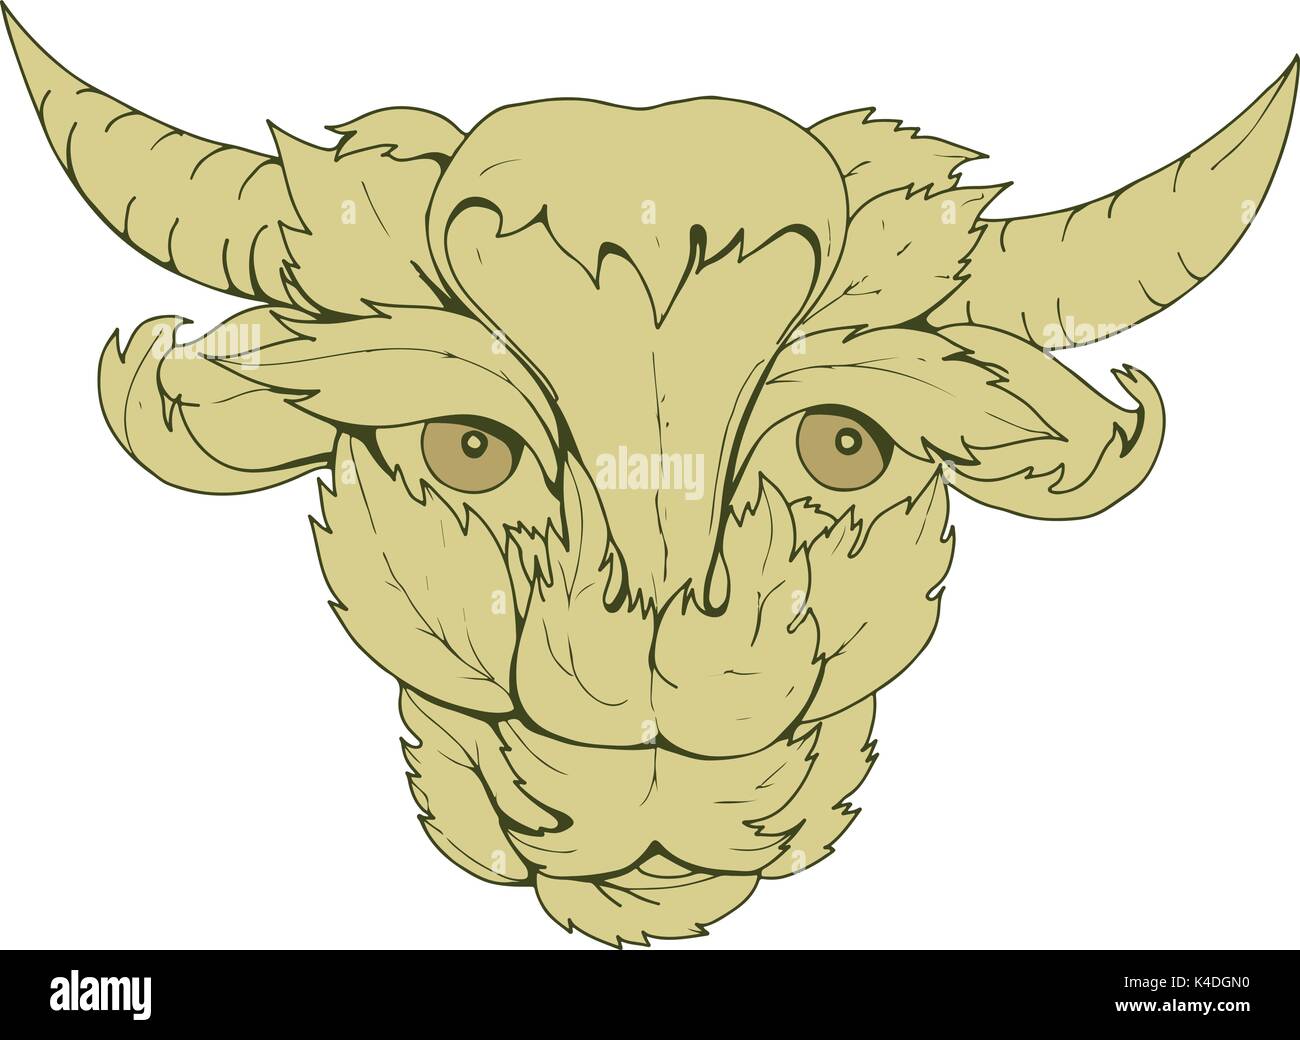 Croquis dessin illustration style de vache vert ou bull avec la tête entourée de feuilles ou faits de vue de l'avant. Illustration de Vecteur